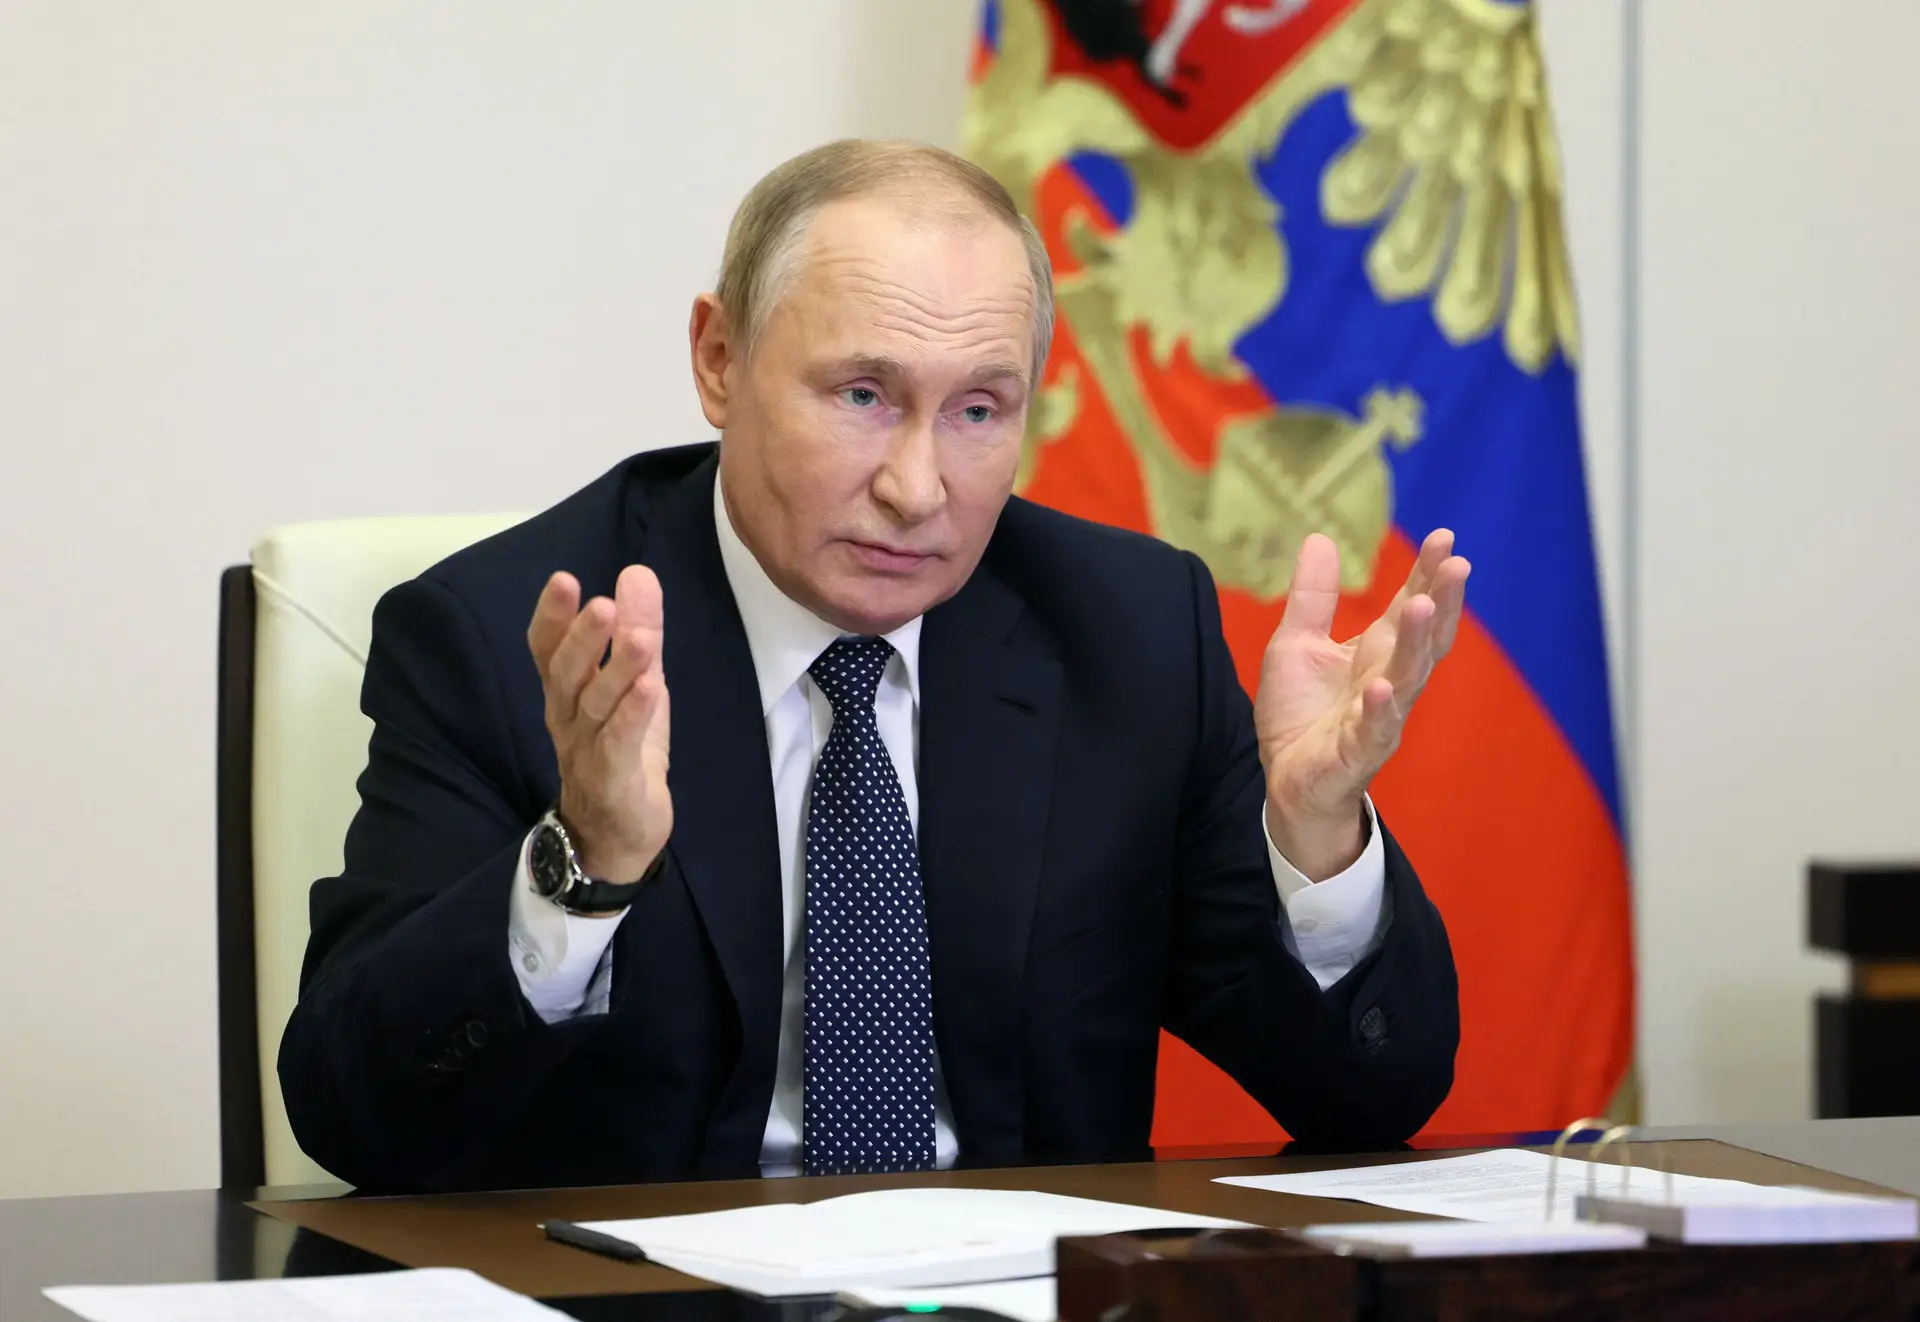 Putin promete "respostas severas" em caso de novos "ataques terroristas" à Rússia